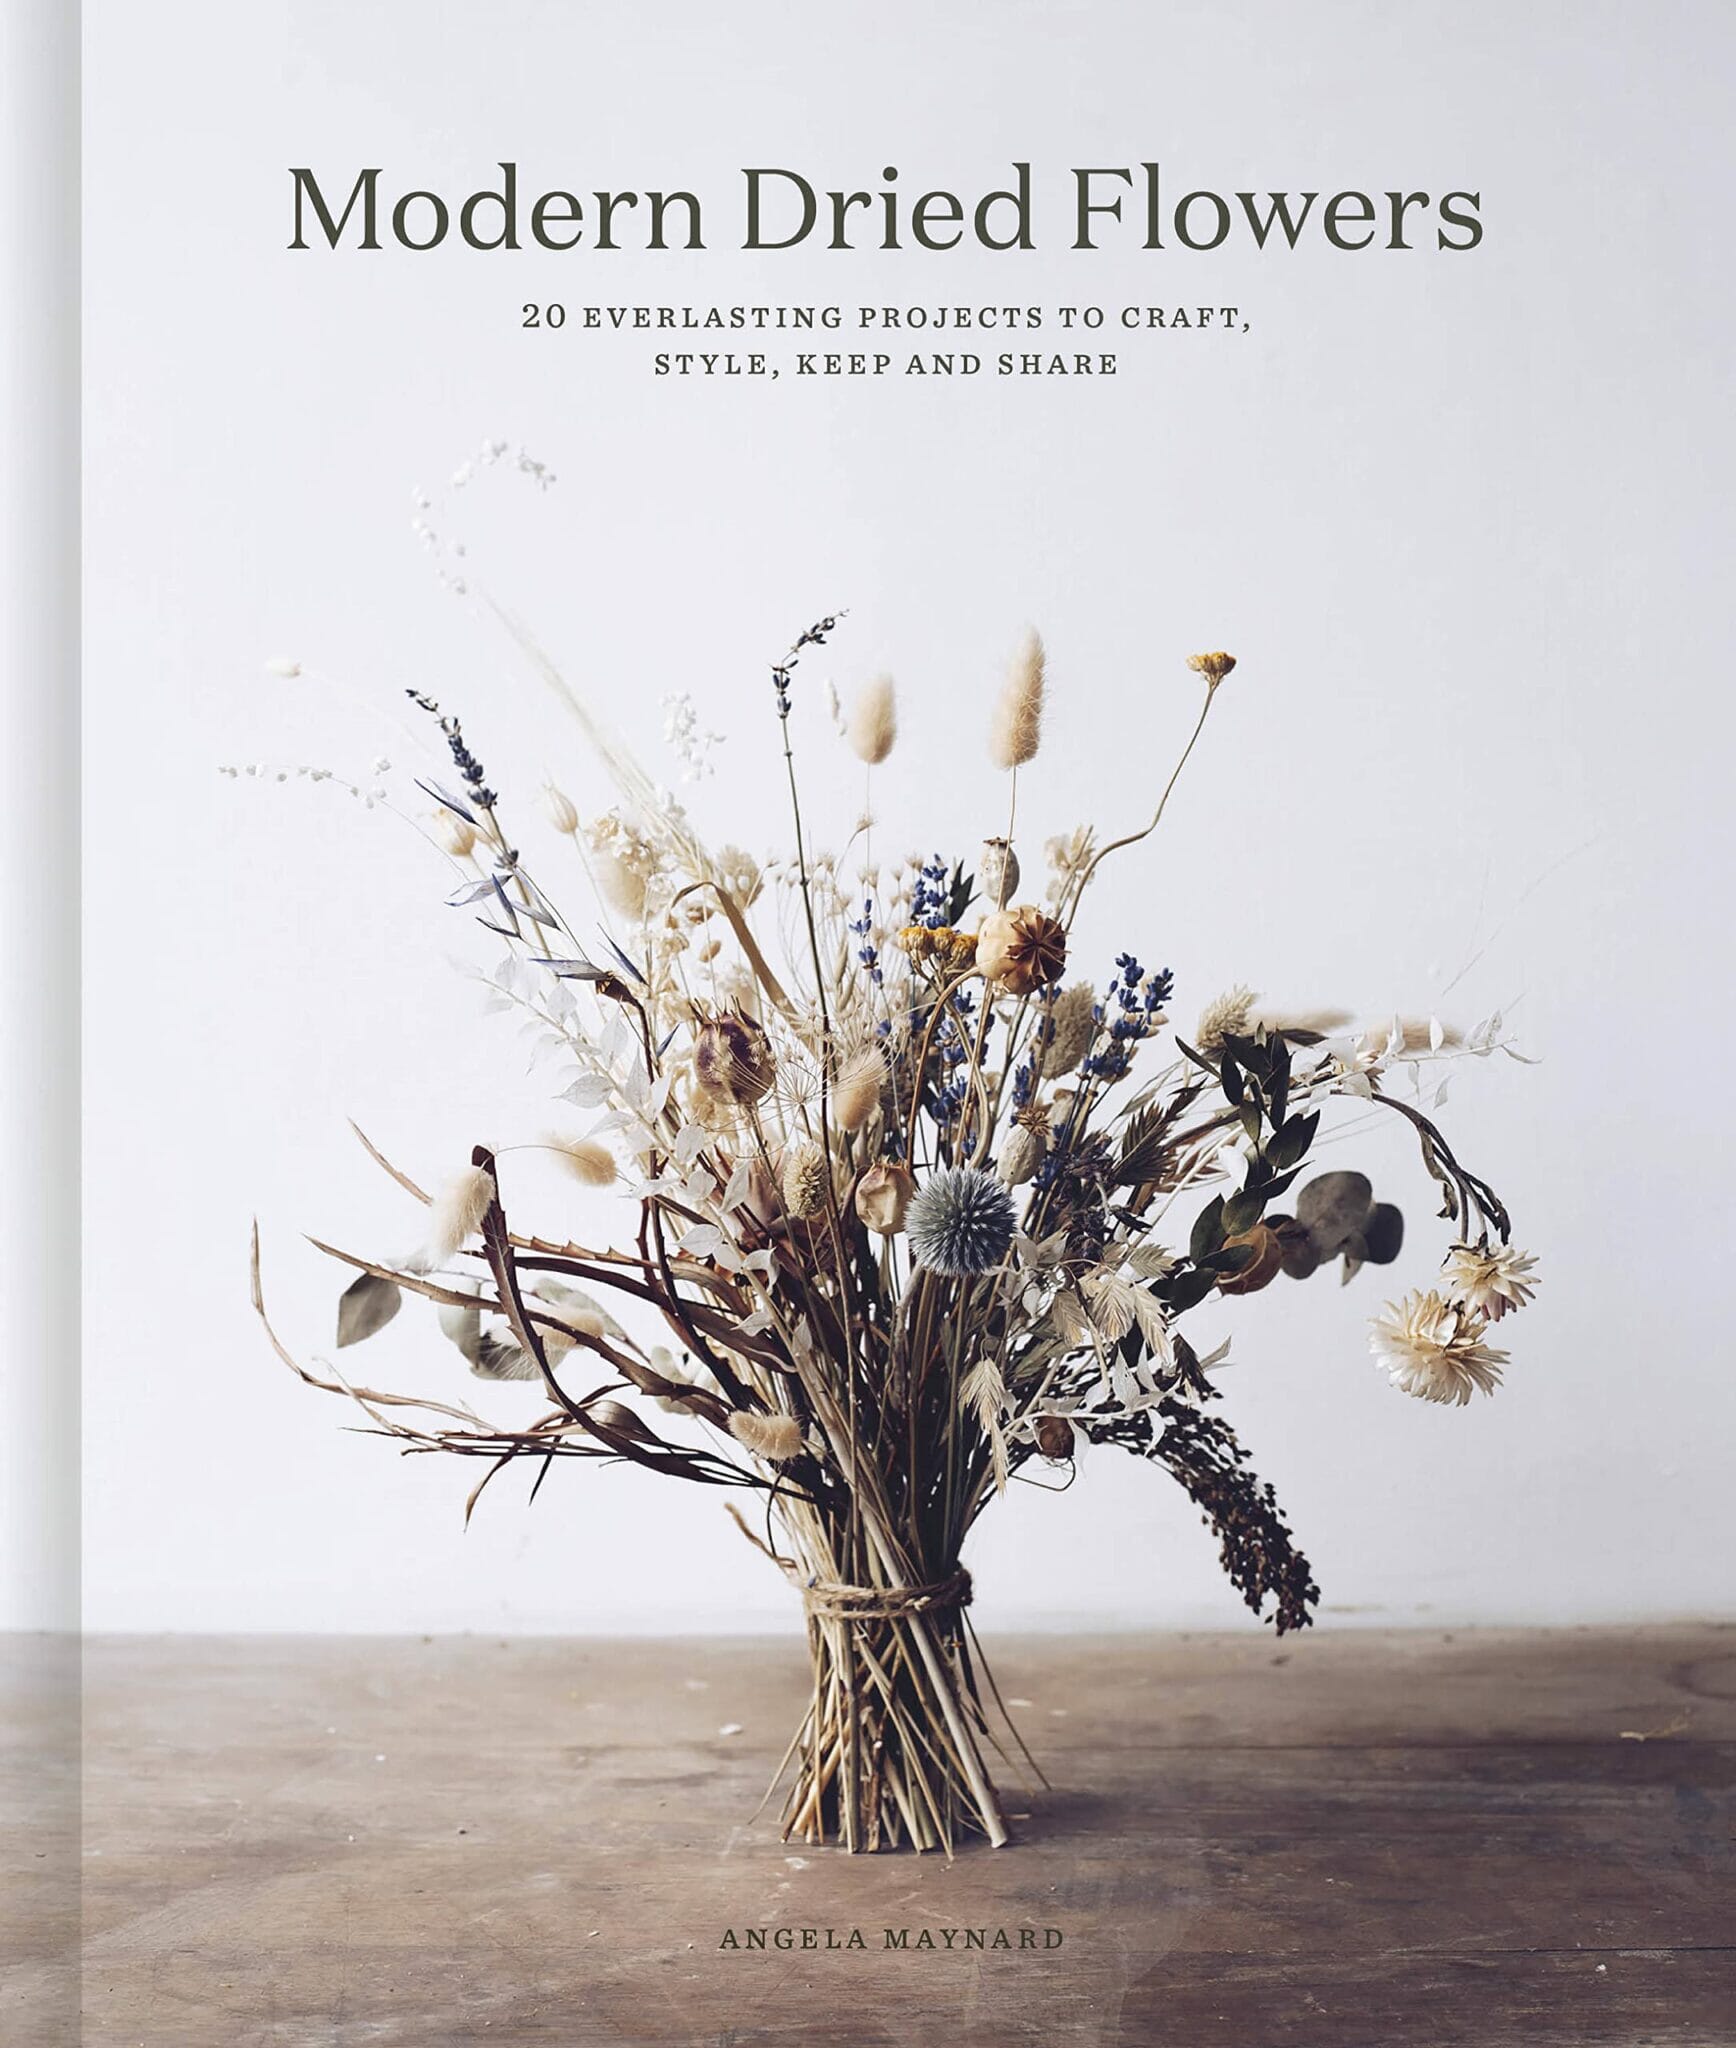 Bilde av New-mags - New-mags Boken Modern Dried Flowers - Lunehjem.no - Interiør På Nett